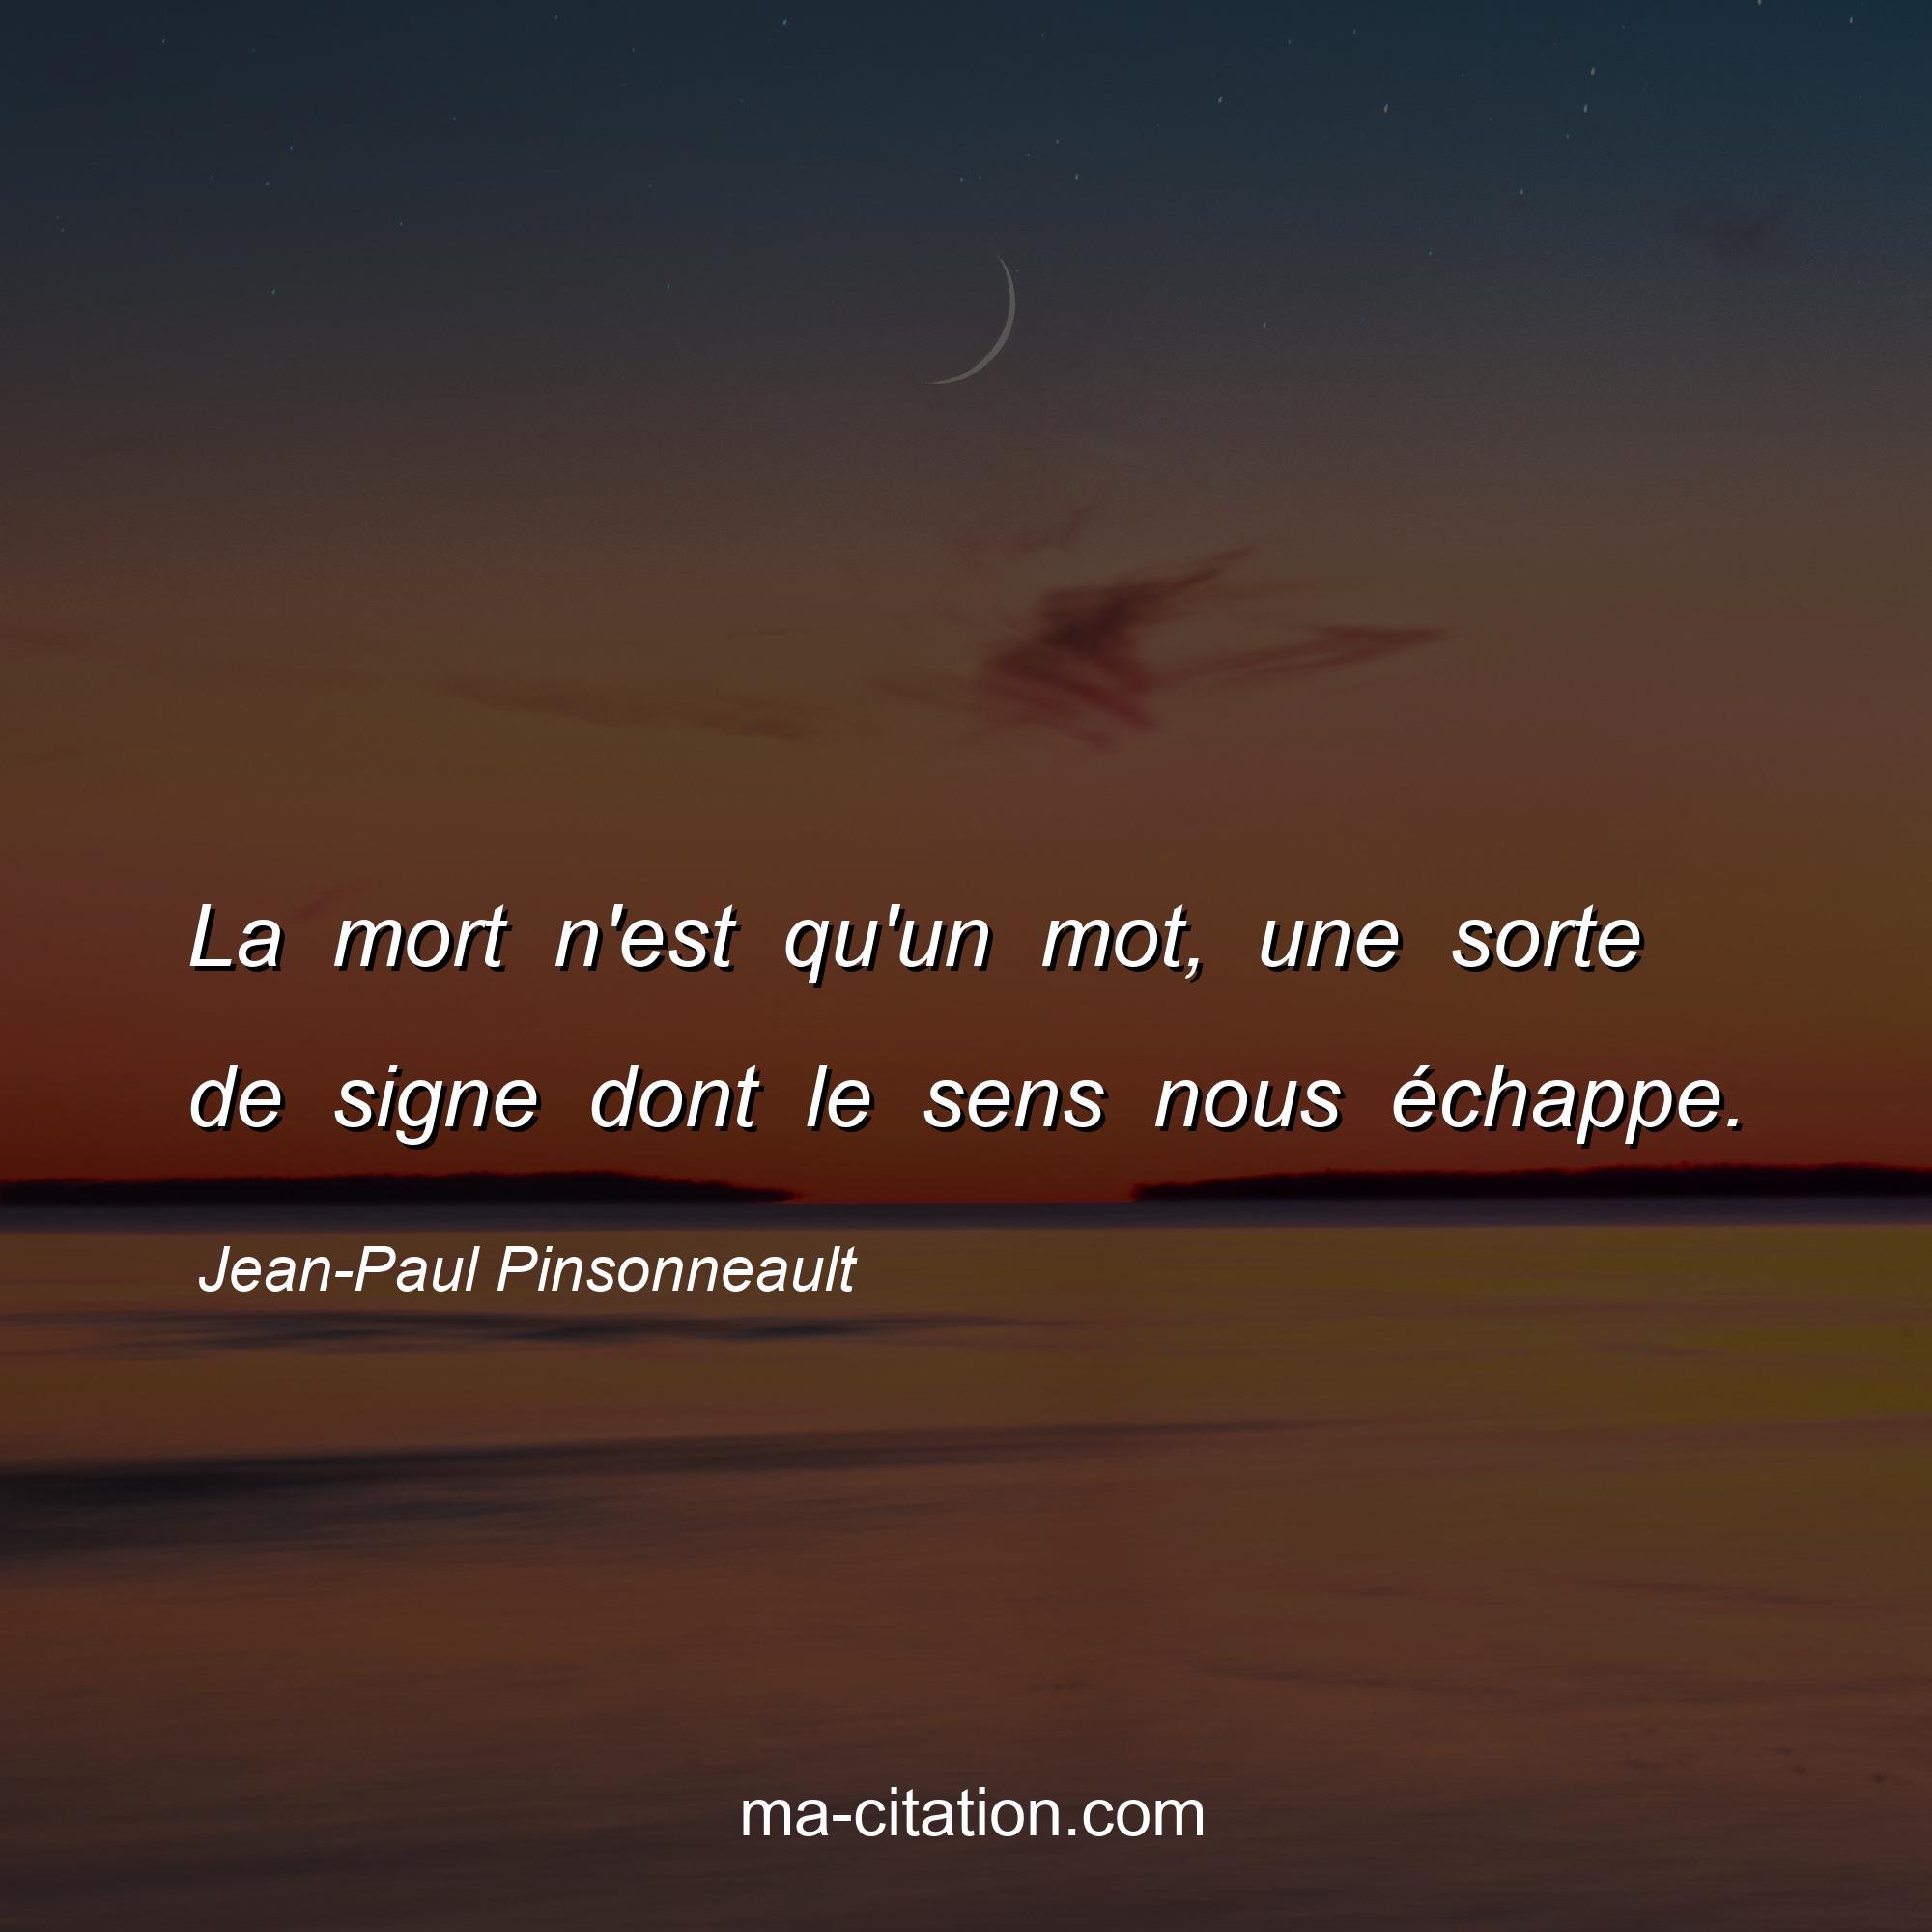 Jean-Paul Pinsonneault : La mort n'est qu'un mot, une sorte de signe dont le sens nous échappe.